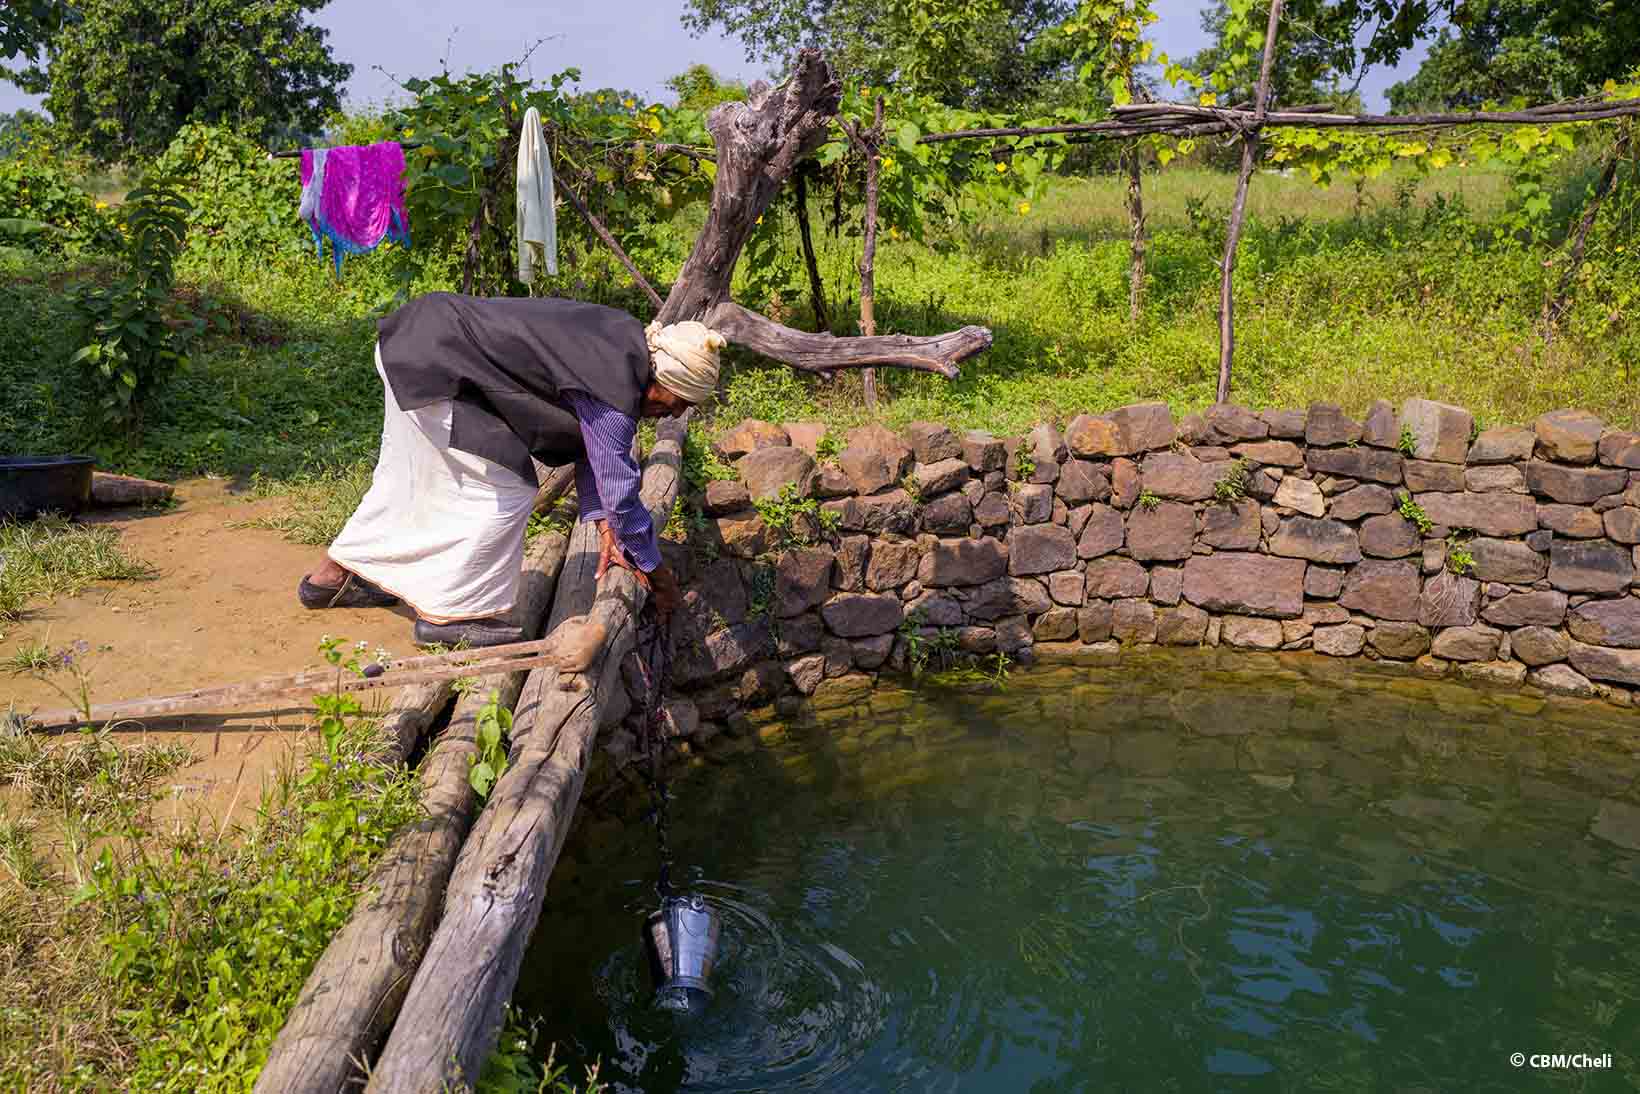 Un Indiano di mezza età con un handicap fisico chinato su un pozzo sta riempiendo d’acqua un secchio di metallo appeso a una catena. 